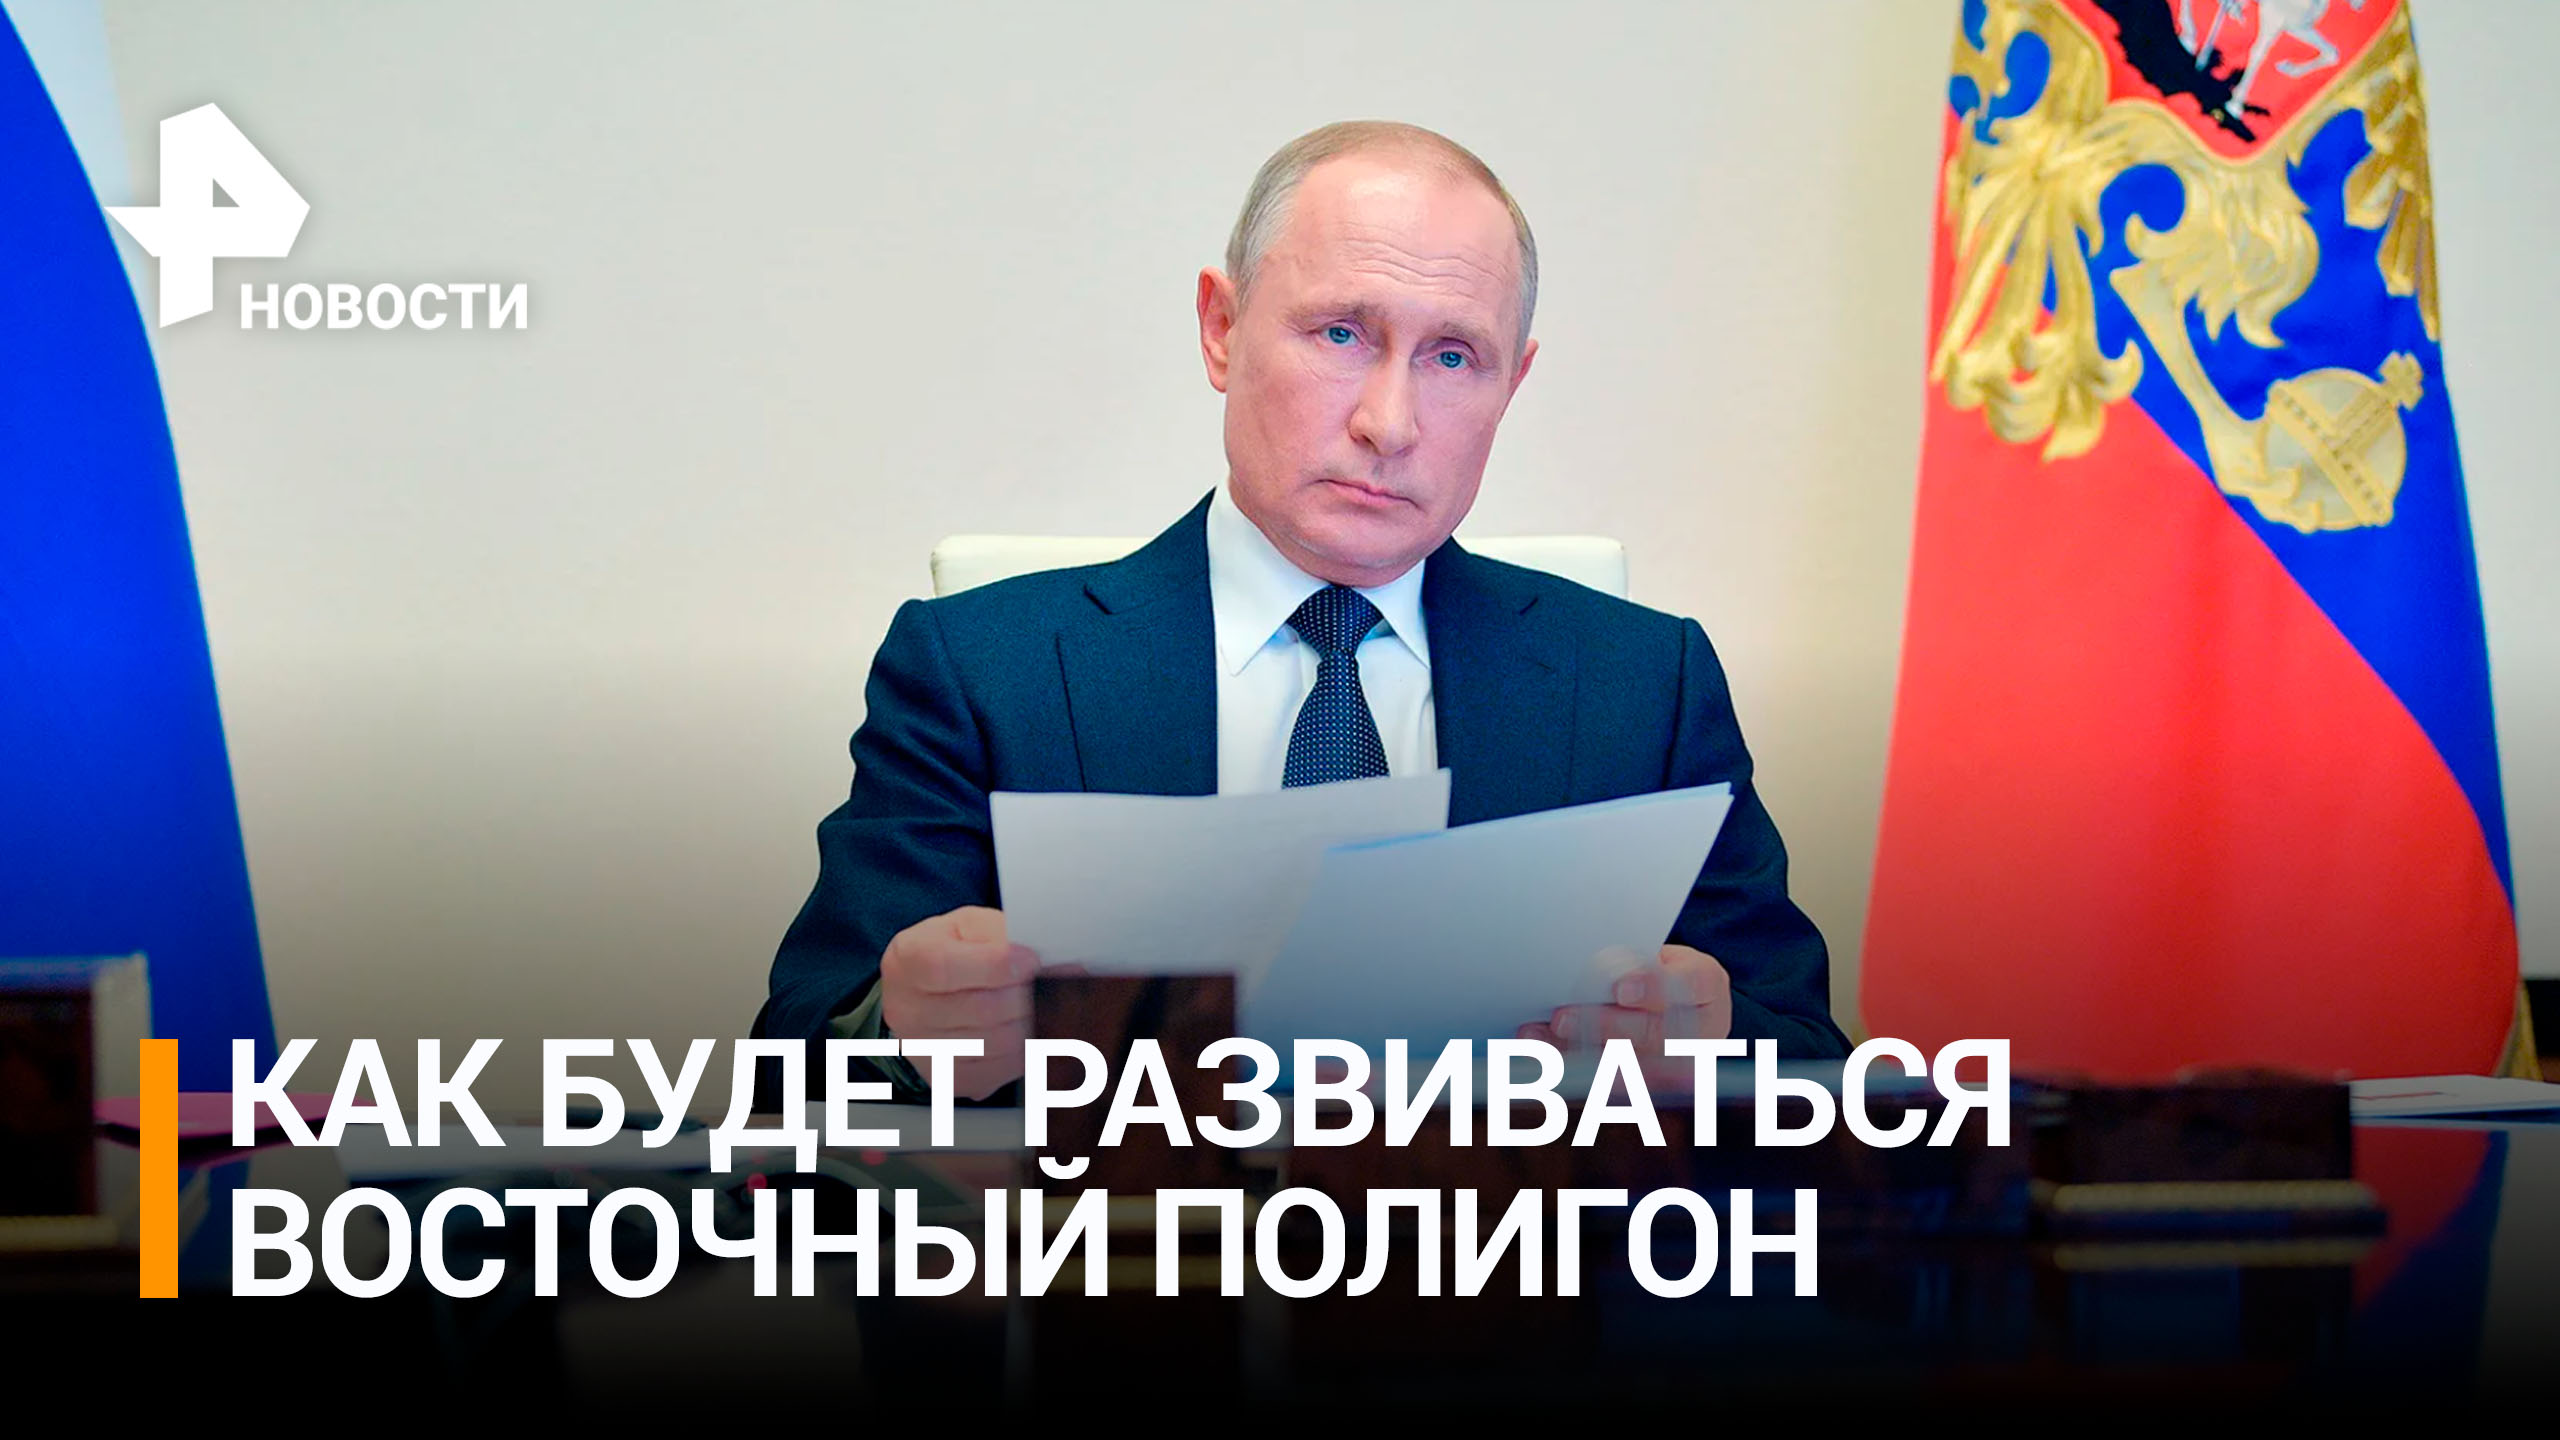 Путин провел совещание по развитию Восточного полигона / РЕН Новости